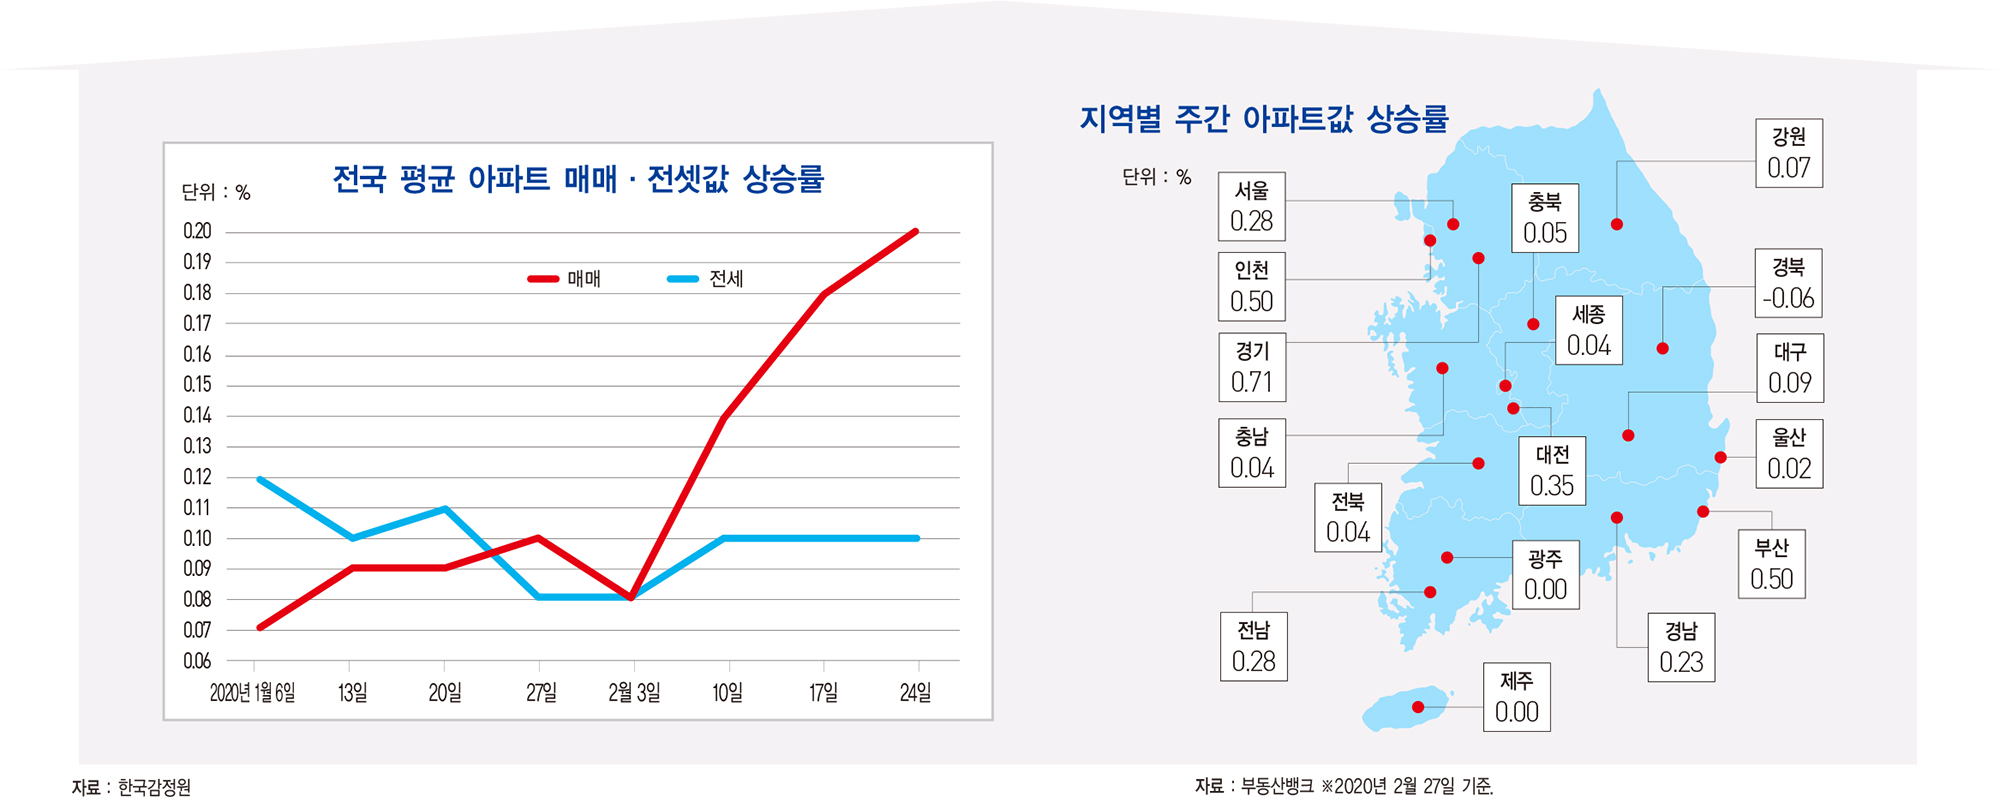 한국은행, 올해 성장률 2.1%로 낮춰